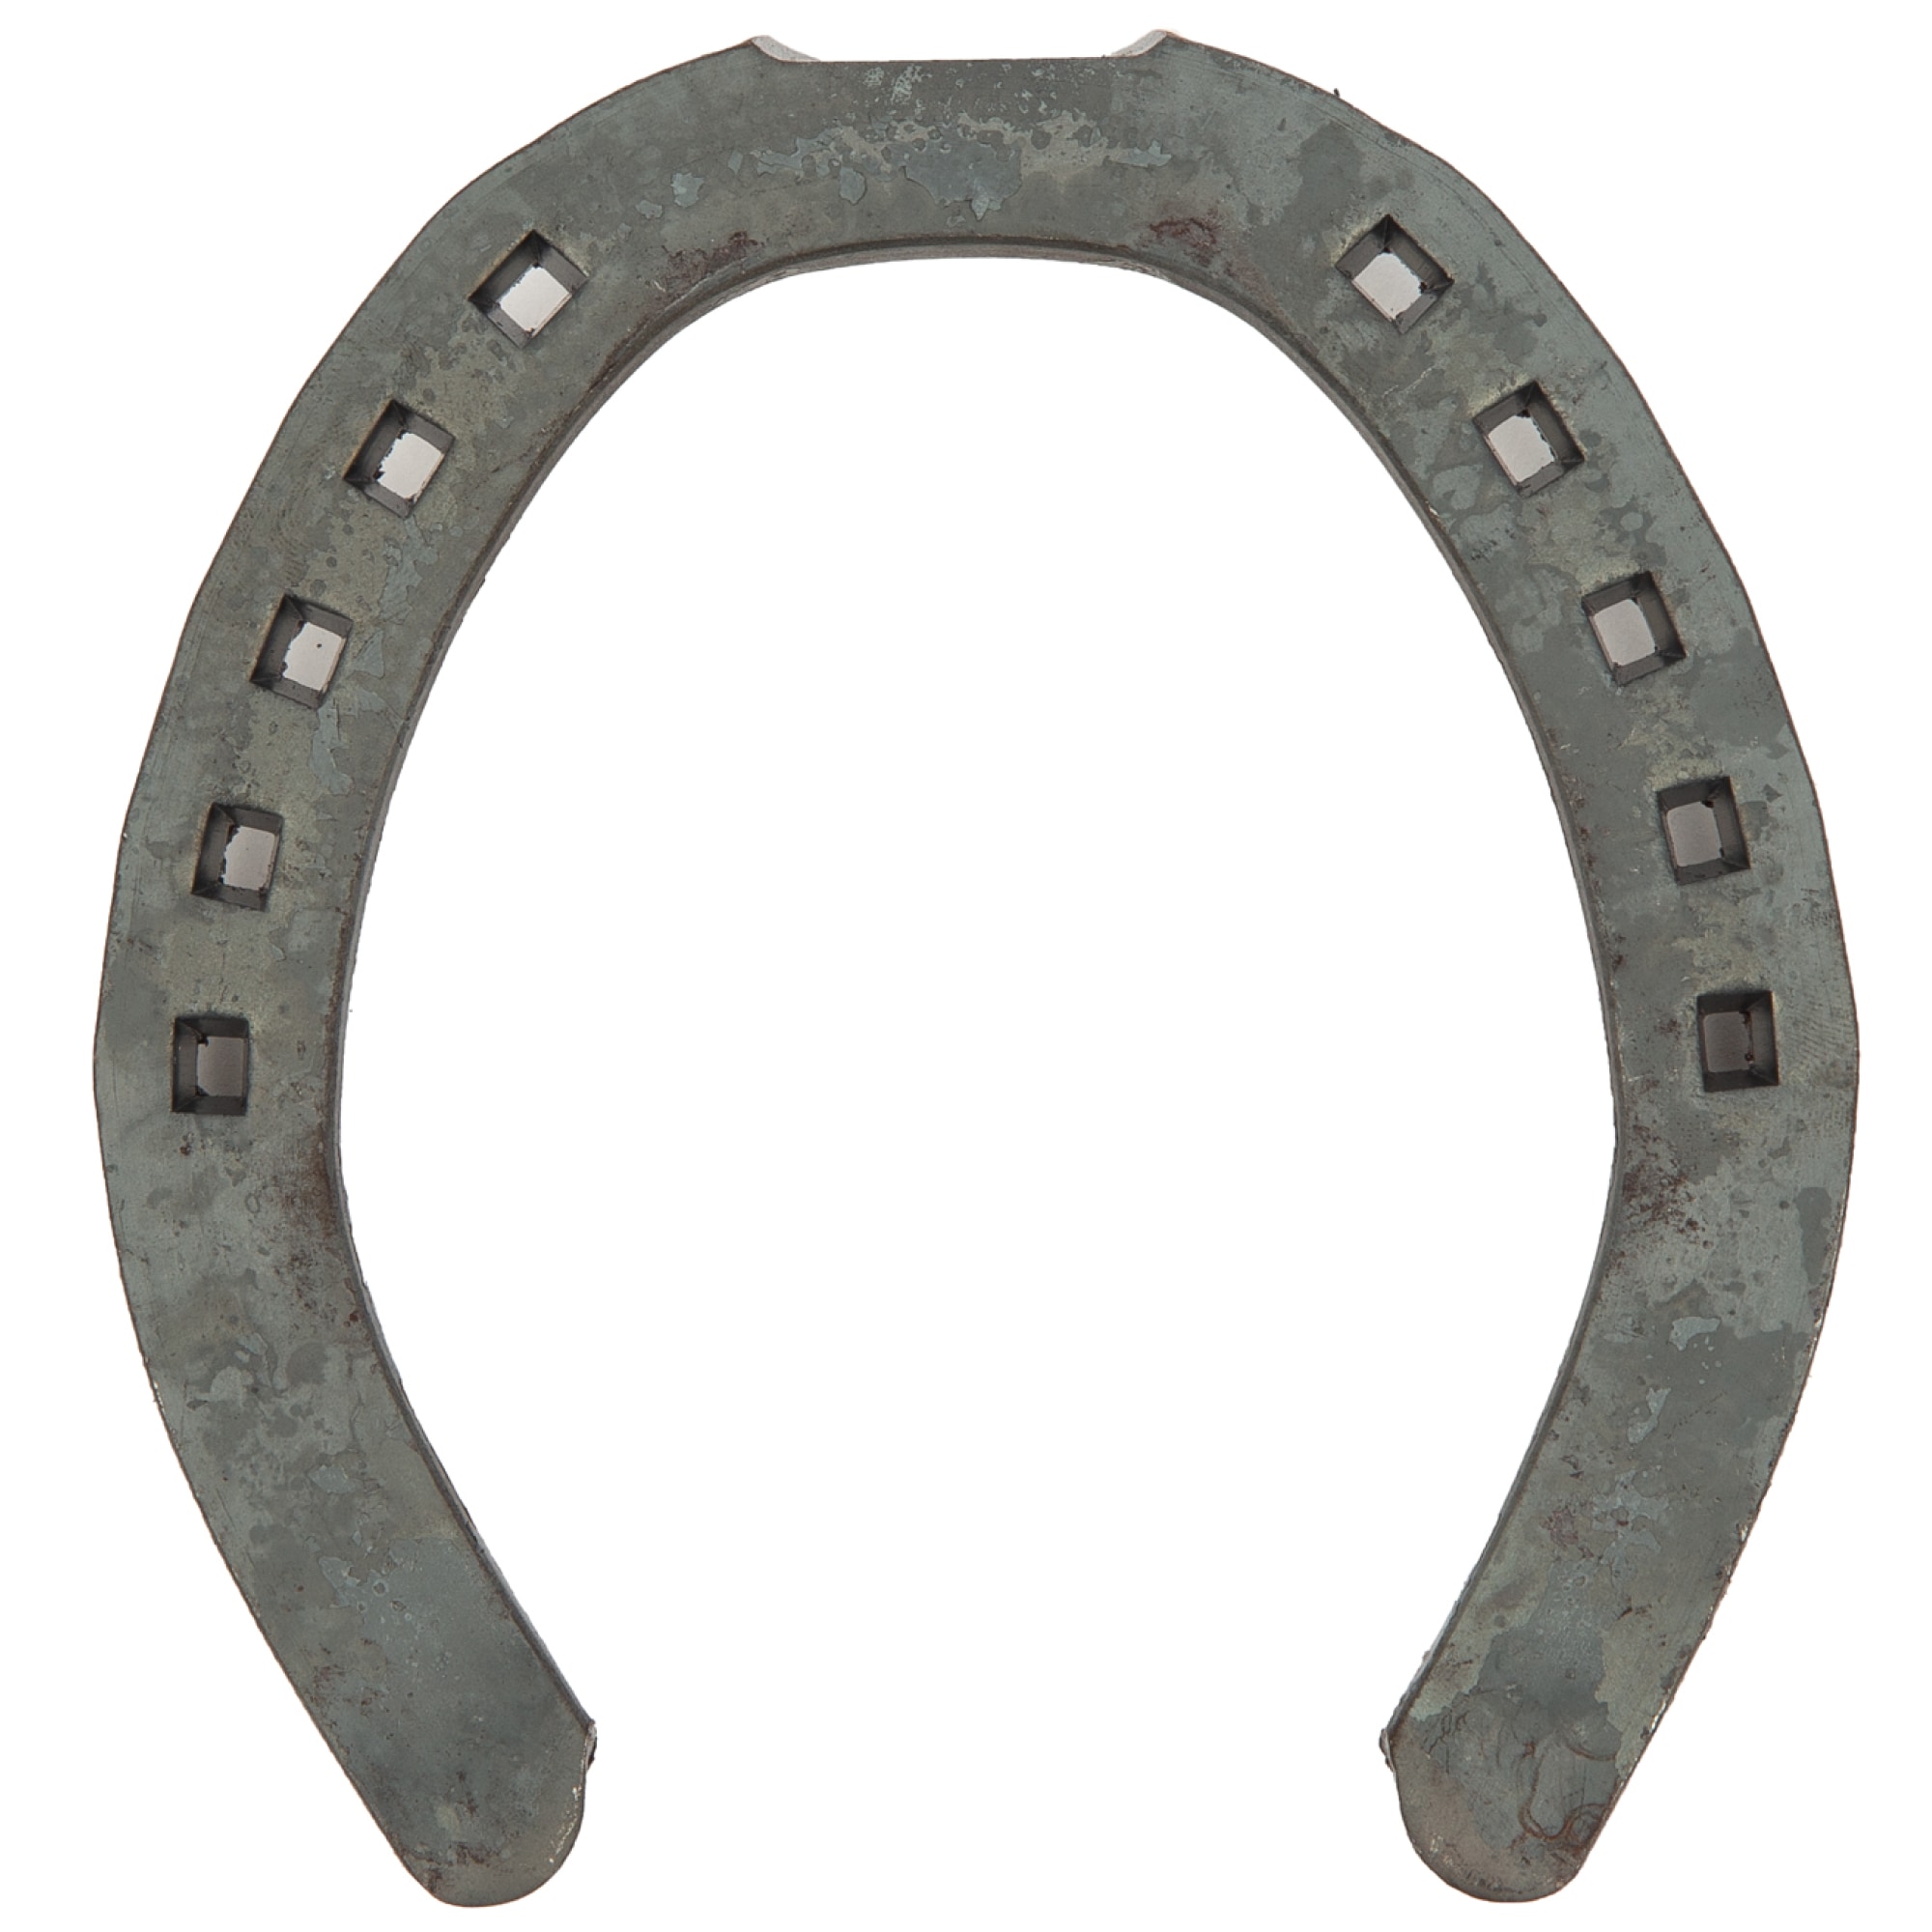 KW horseshoe, 15x6, hind, flat (pcs)